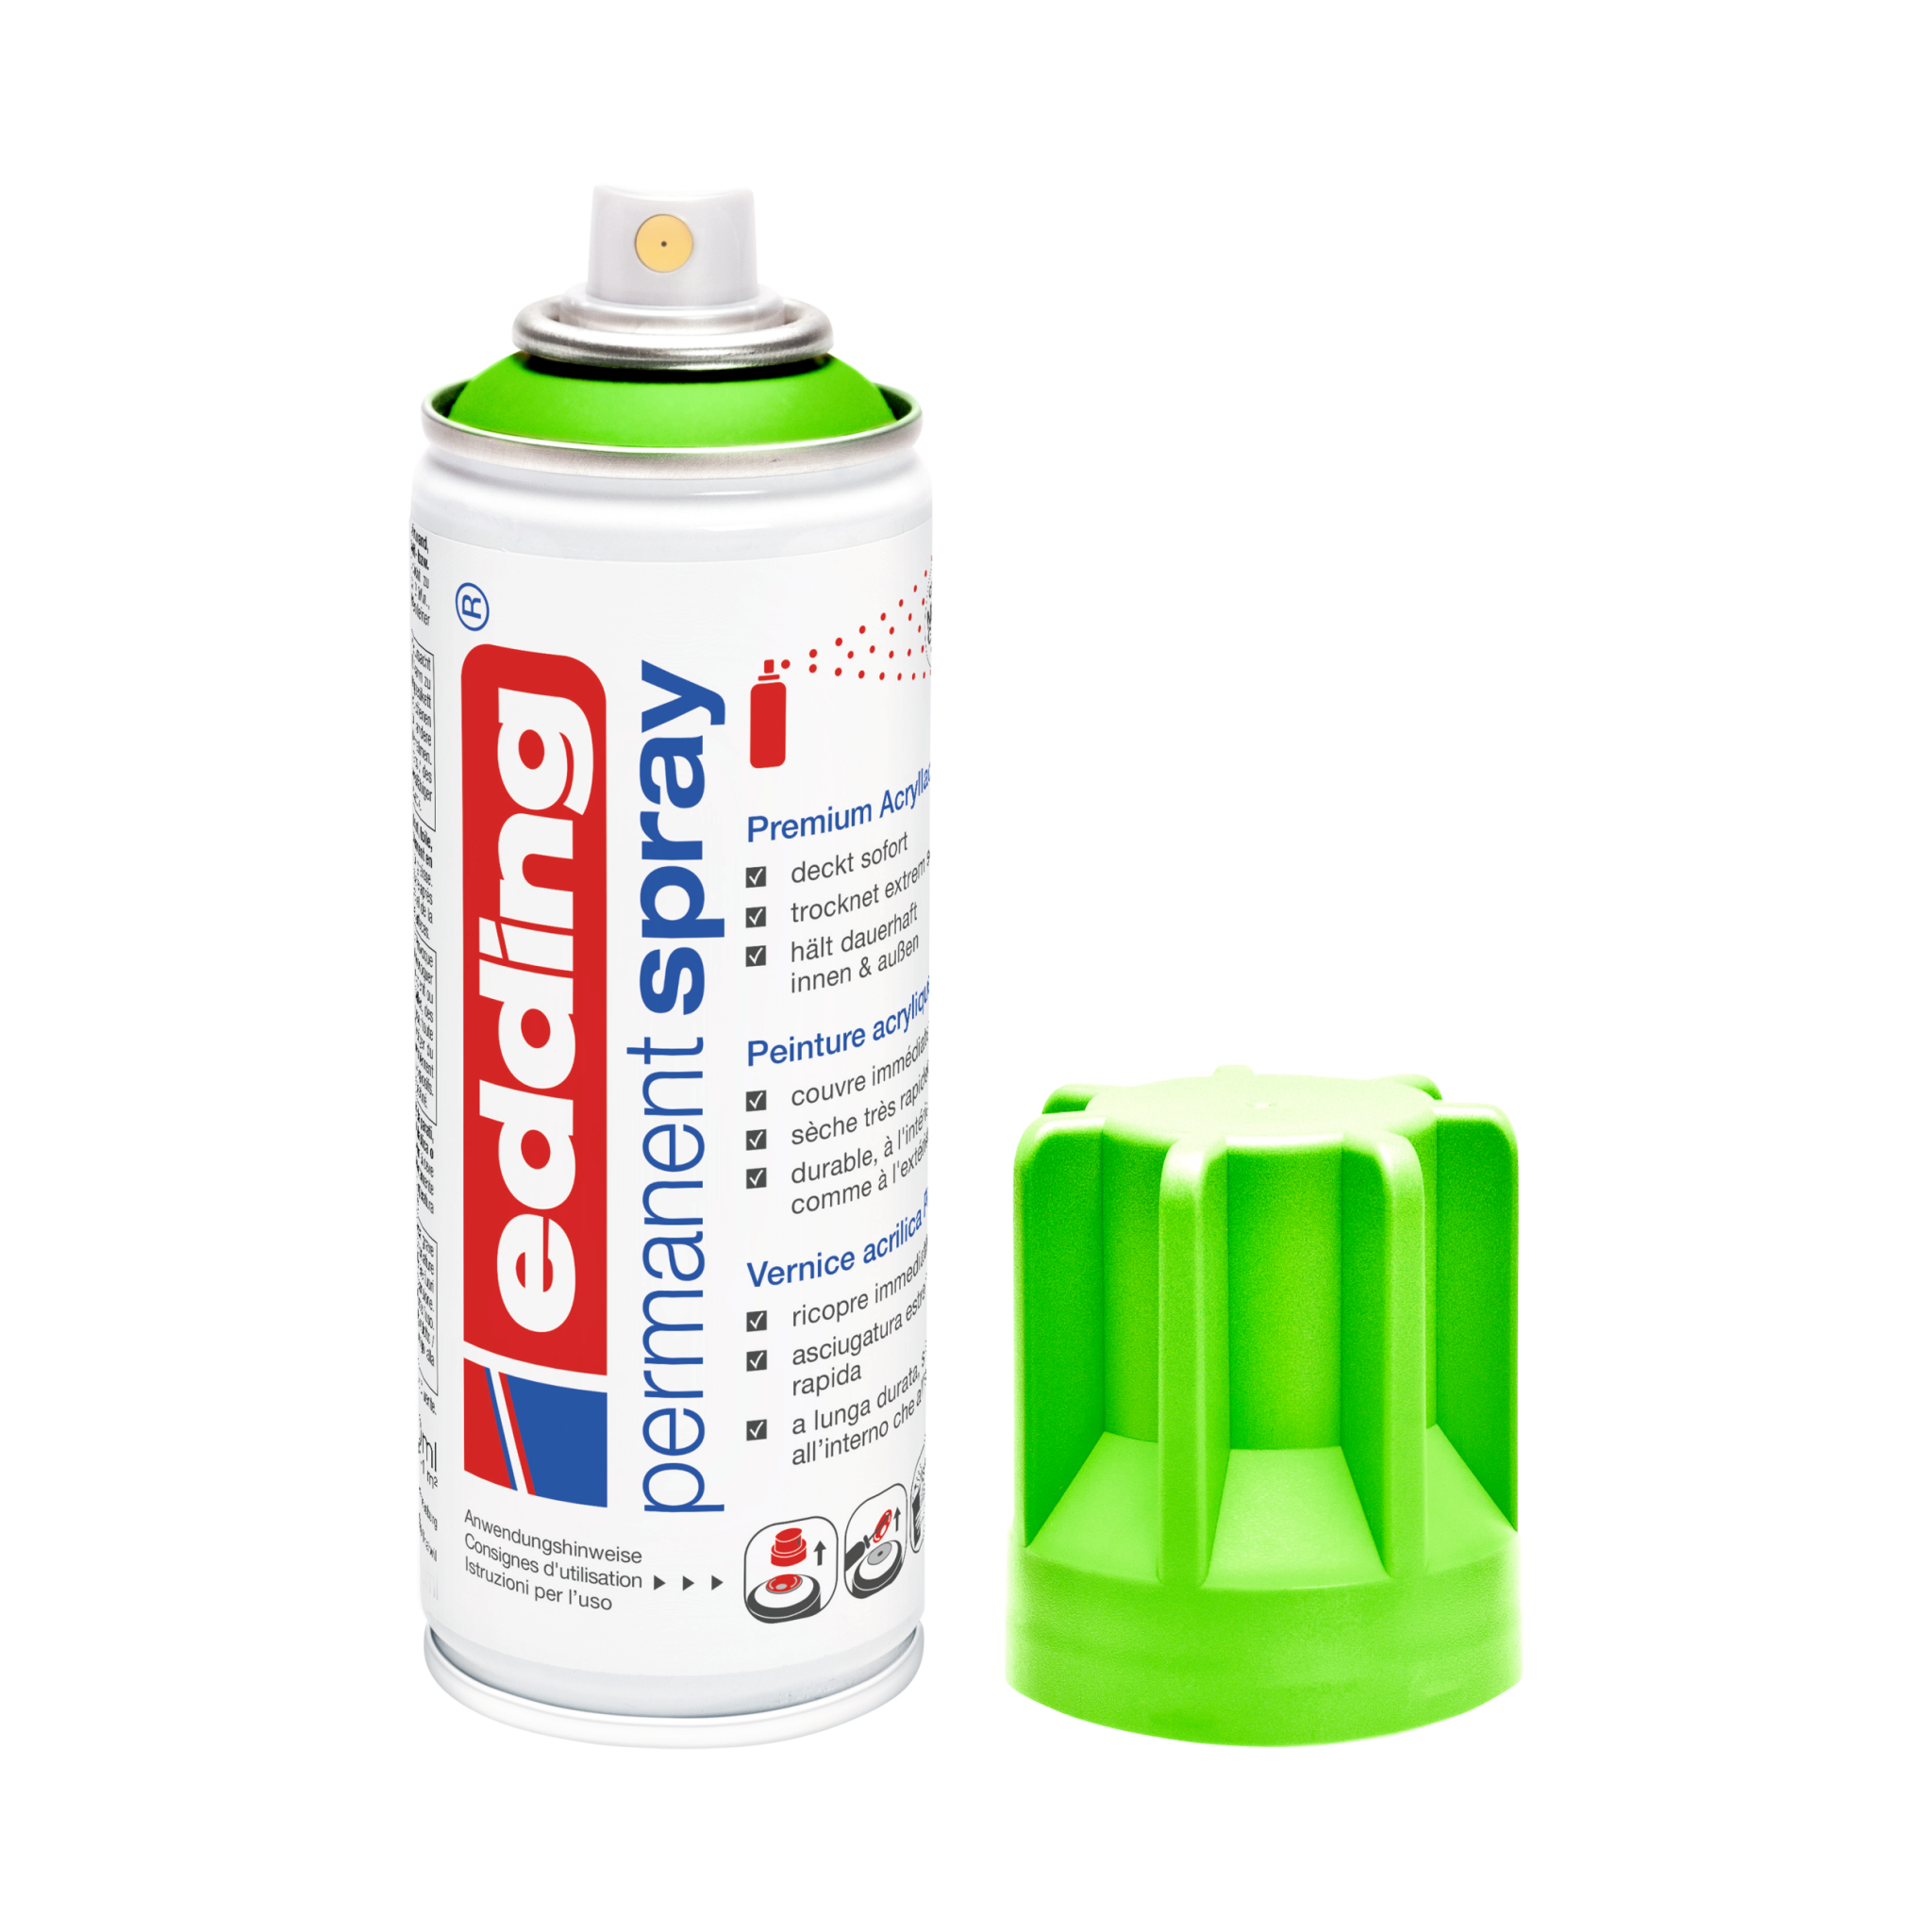 Eine Dose edding 5200 Permanentspray Acryllack Neon & kräftige Farben in Weiß ohne Kappe wird daneben auf einem neutralen Hintergrund platziert.